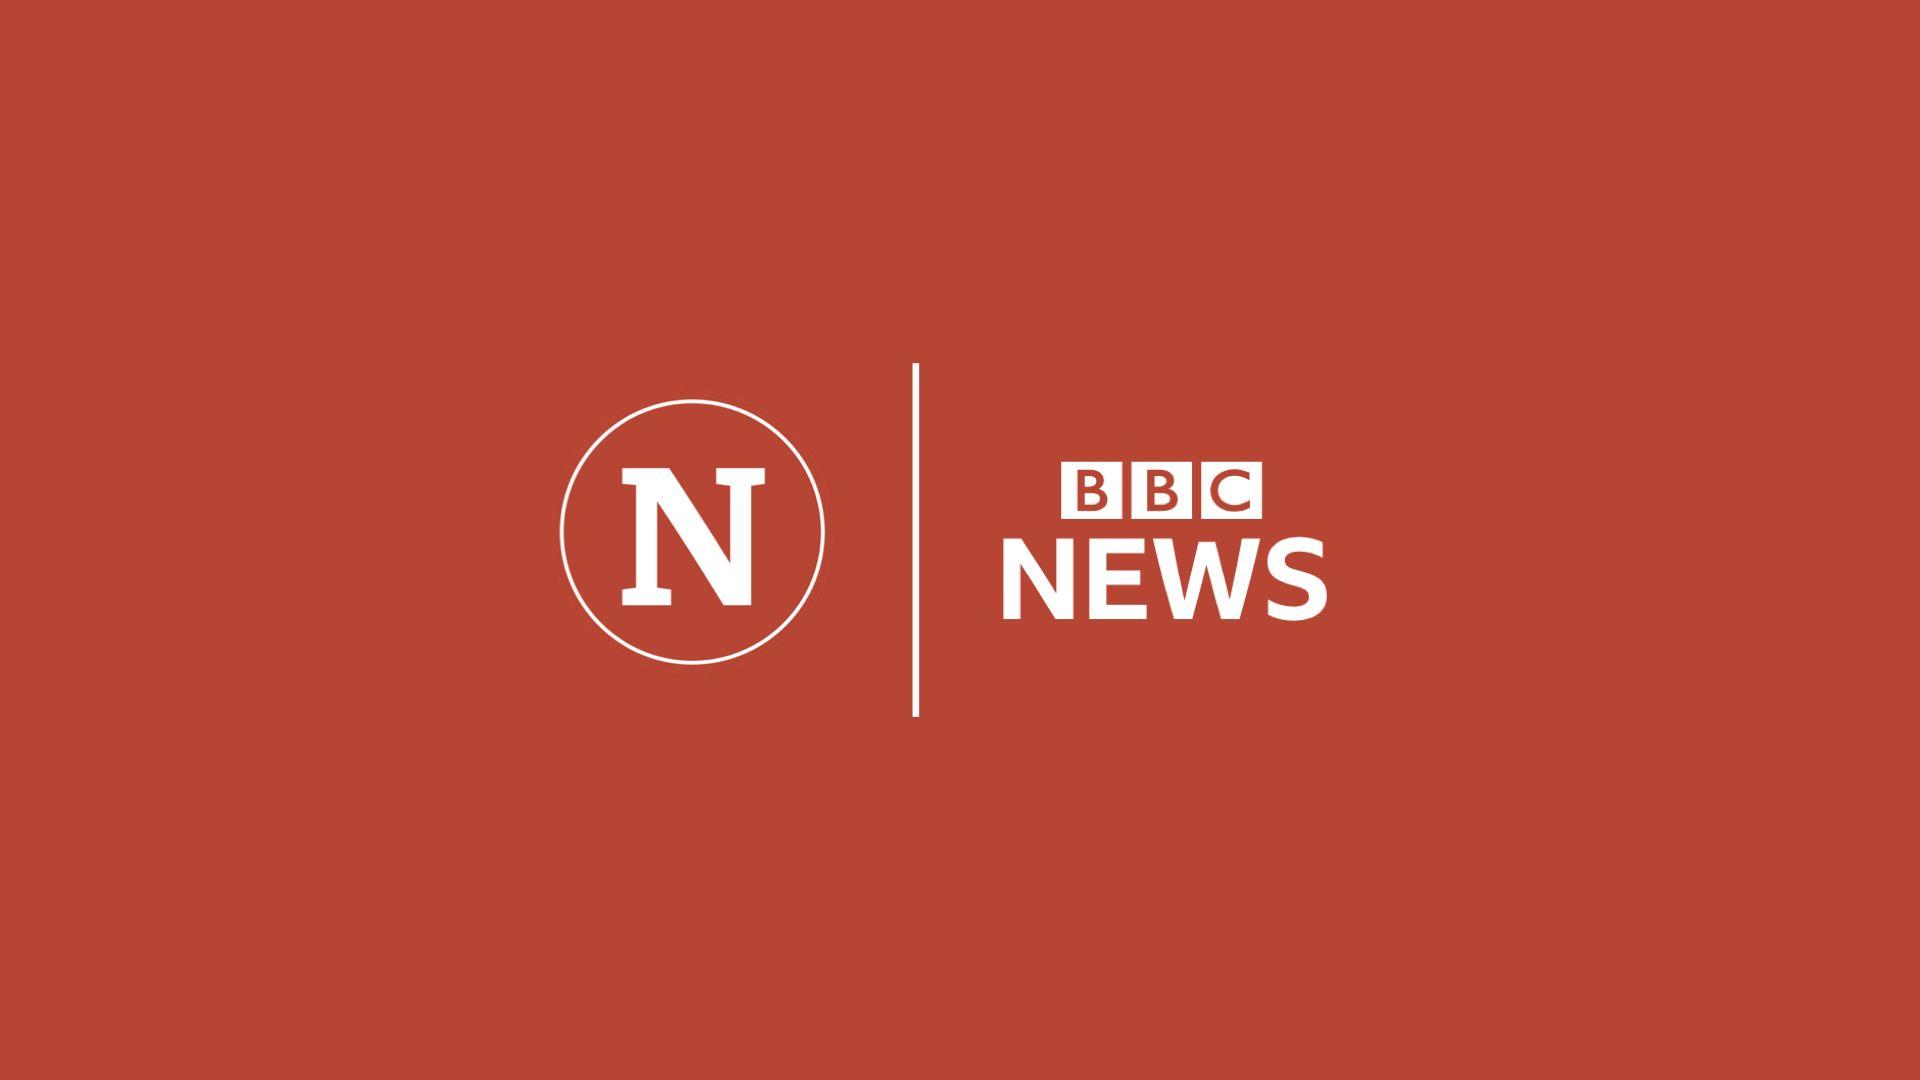 Bbc.com Logo - BBC News // 2019 Rebrand - TV Forum